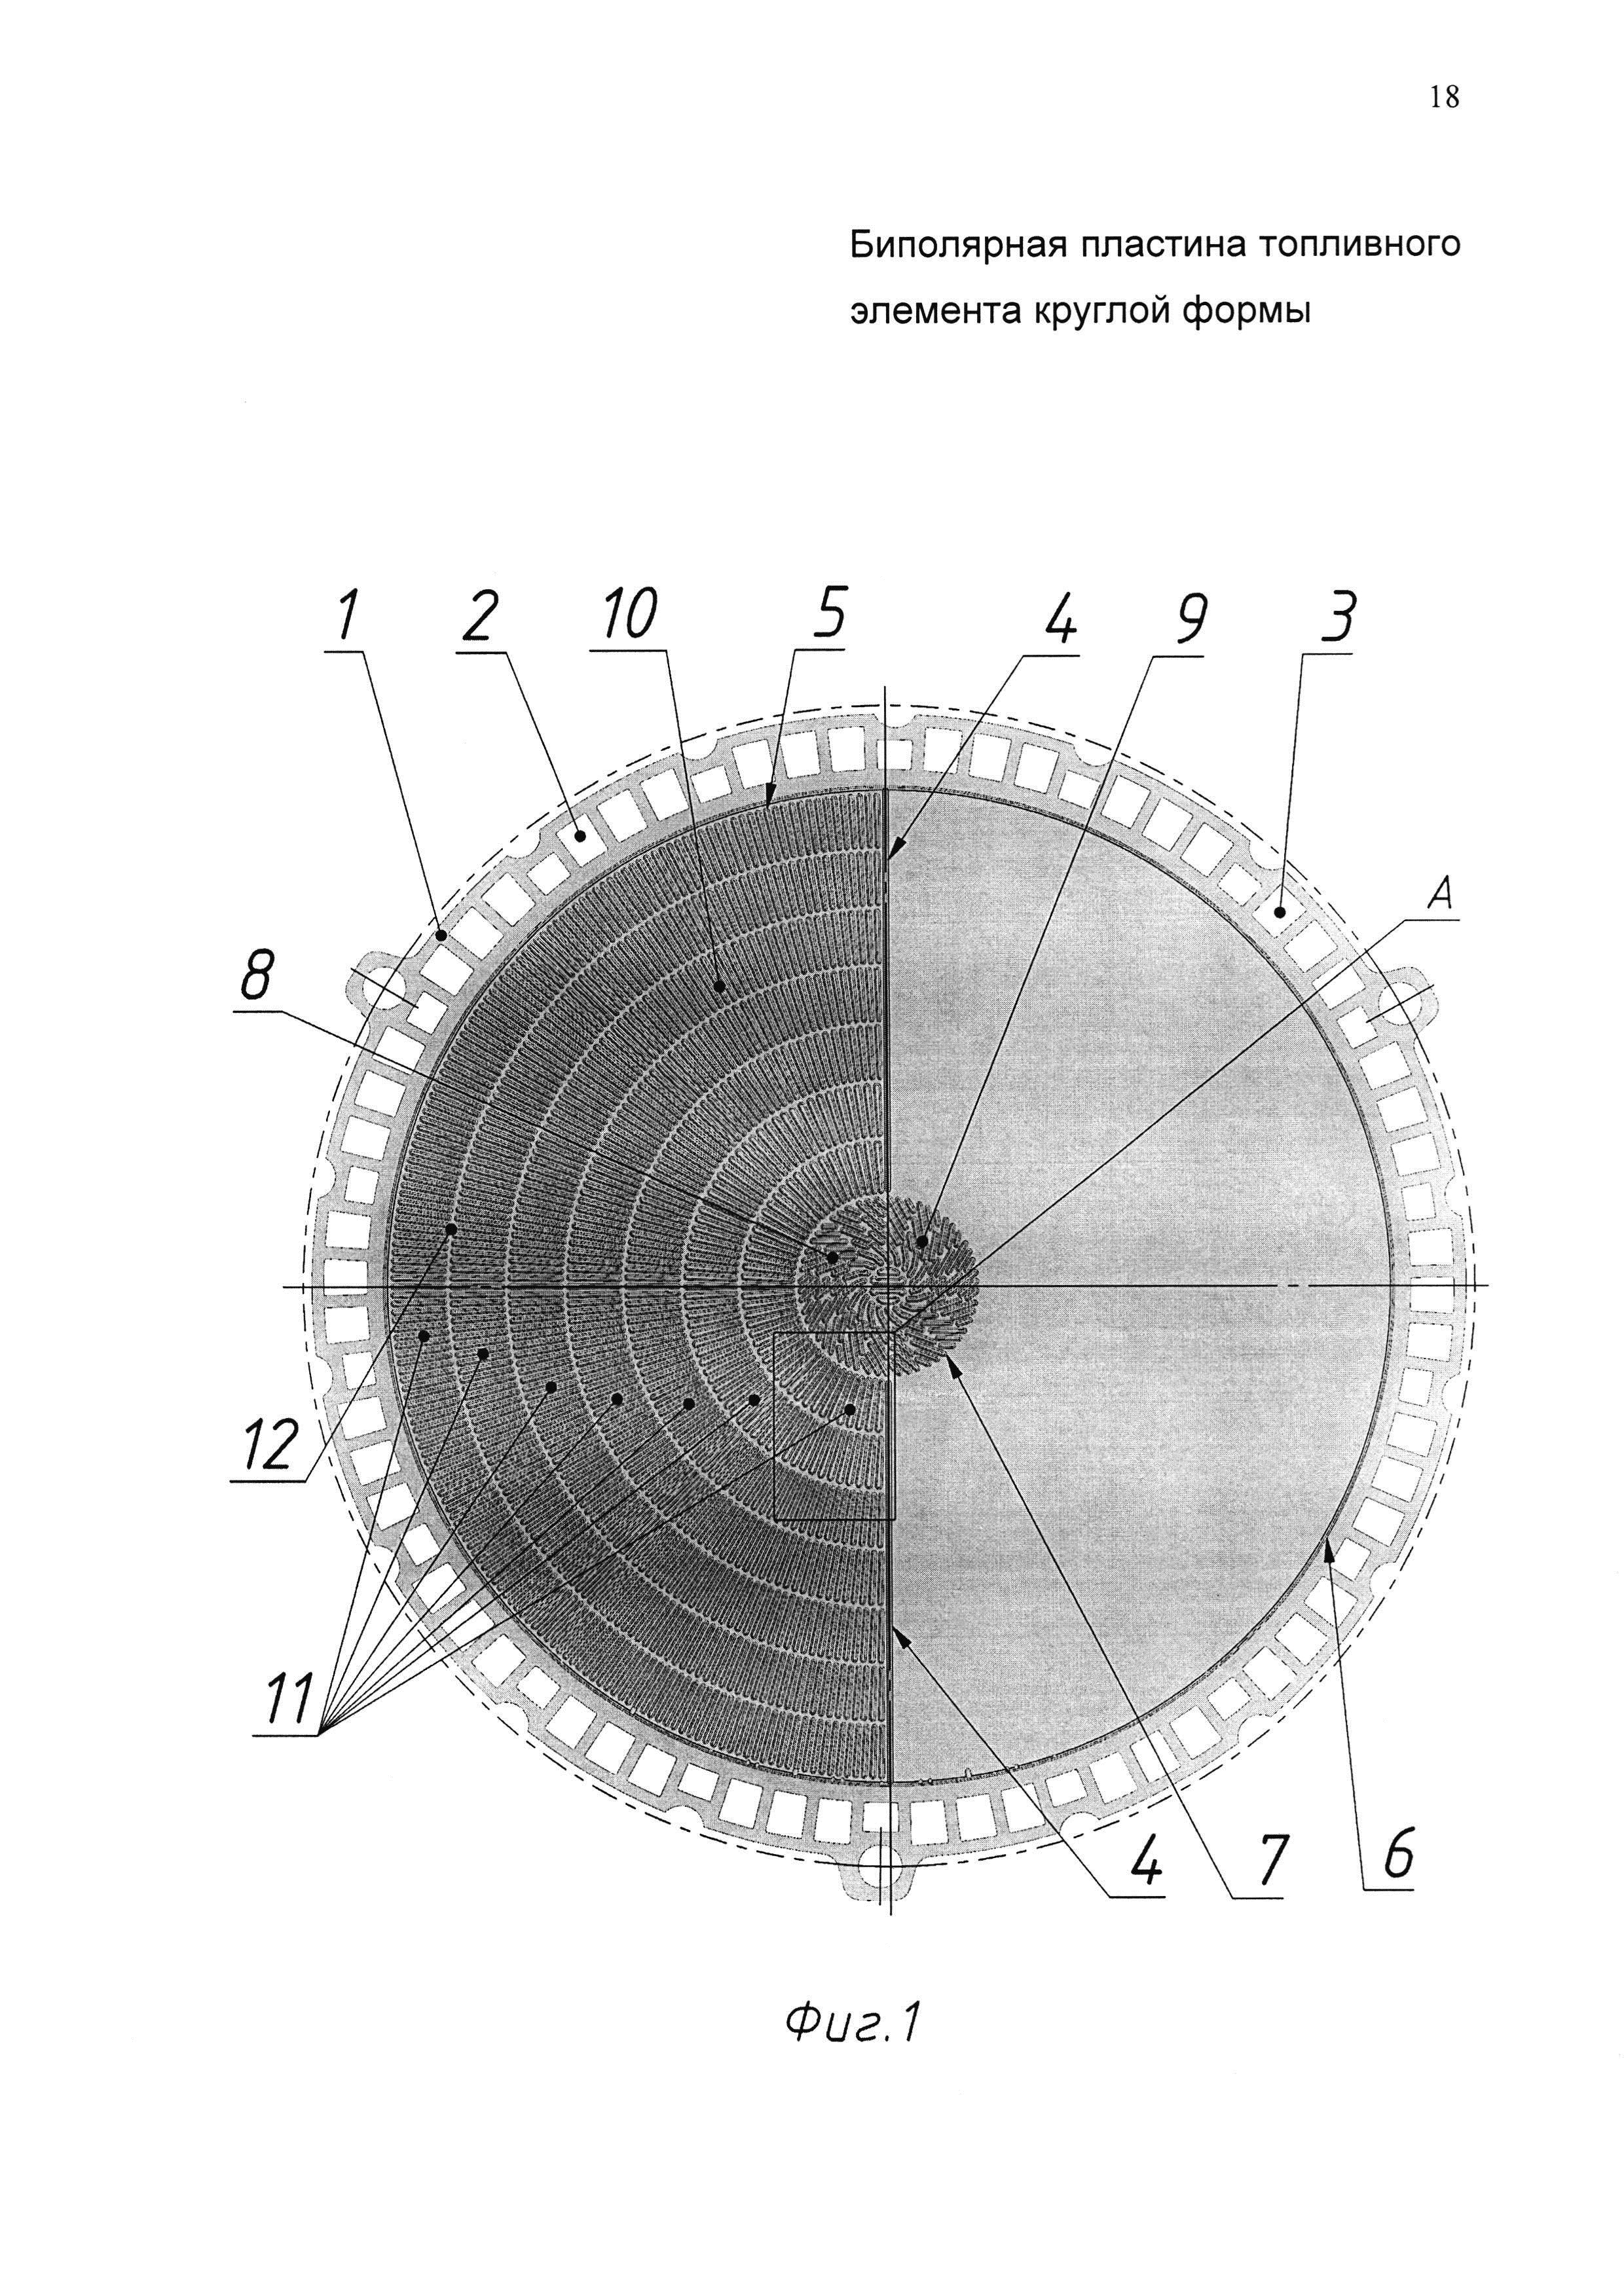 Биполярная пластина топливного элемента круглой формы